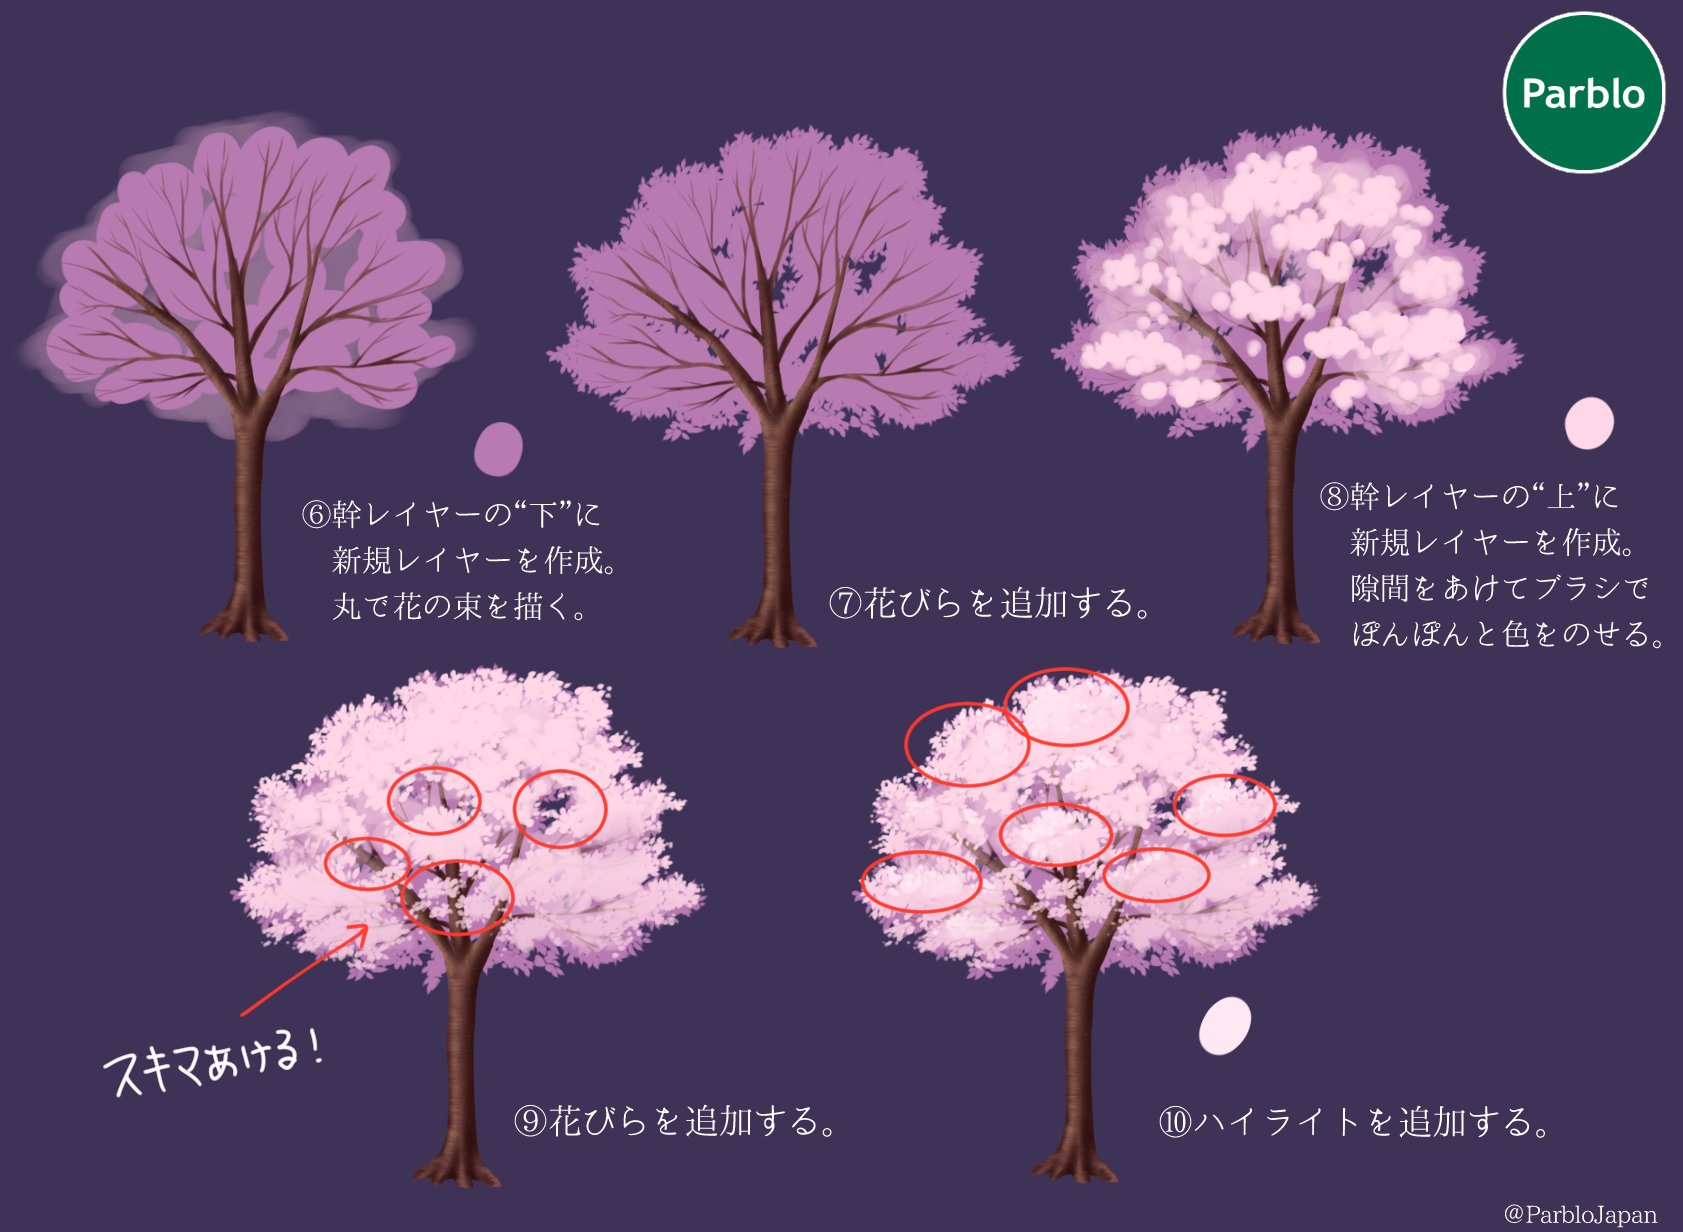 Twitter 上的 Parblo Japan 暖かくなりましたね イラストでお花見しよう 本日は満開の桜の描き方 桜いっぱいのイラストに挑戦してみよう イラスト好きと繋がりたい 絵描きさんと繋がりたい Parblo 桜 T Co Jyj30utxqk Twitter